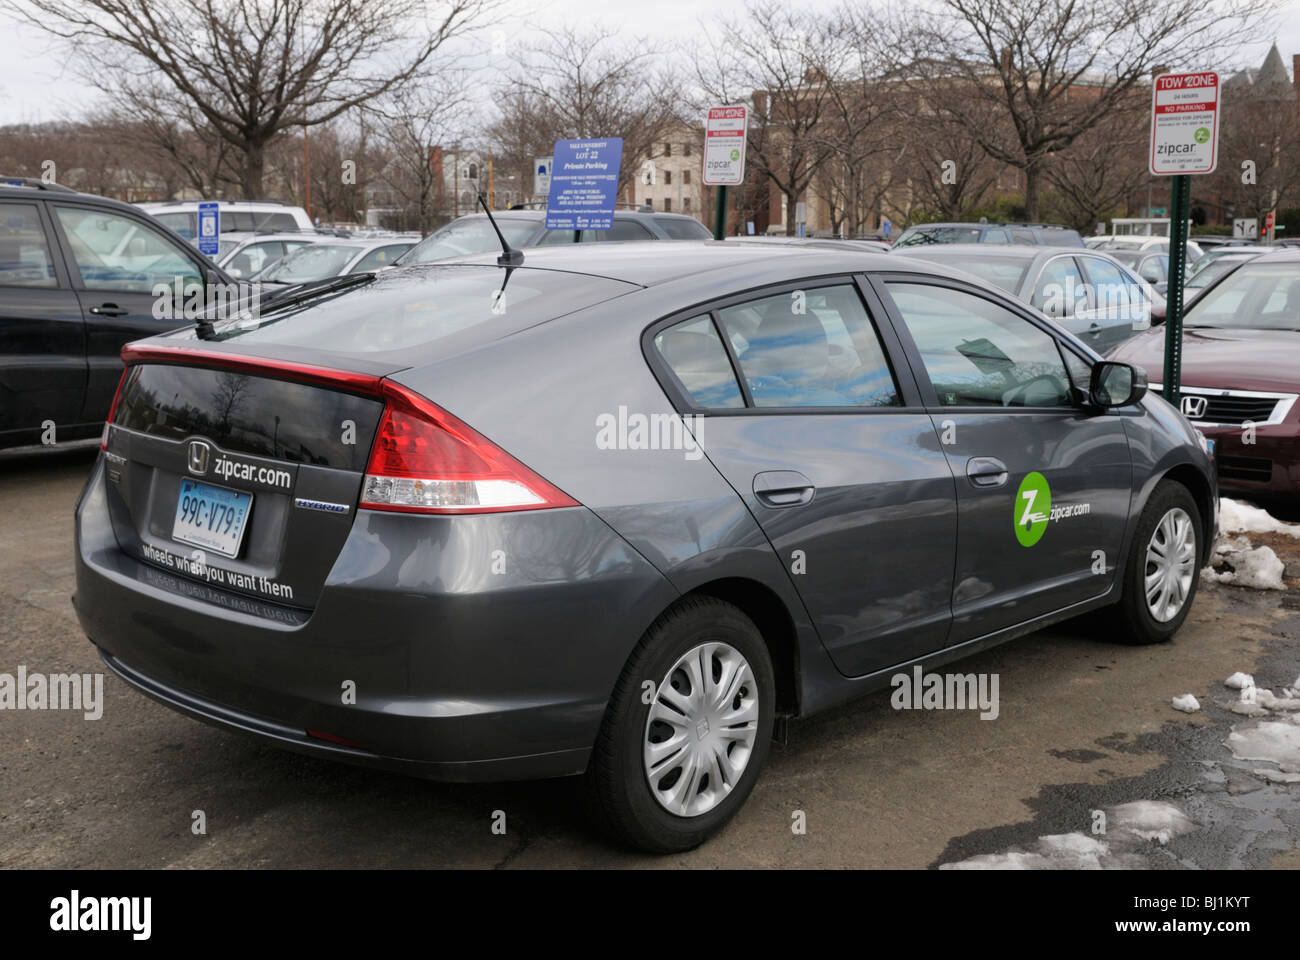 Zipcar geparkt in reservierten Plätze an der Yale University, New Haven, CT. Das Auto ist ein Honda Insight. Stockfoto